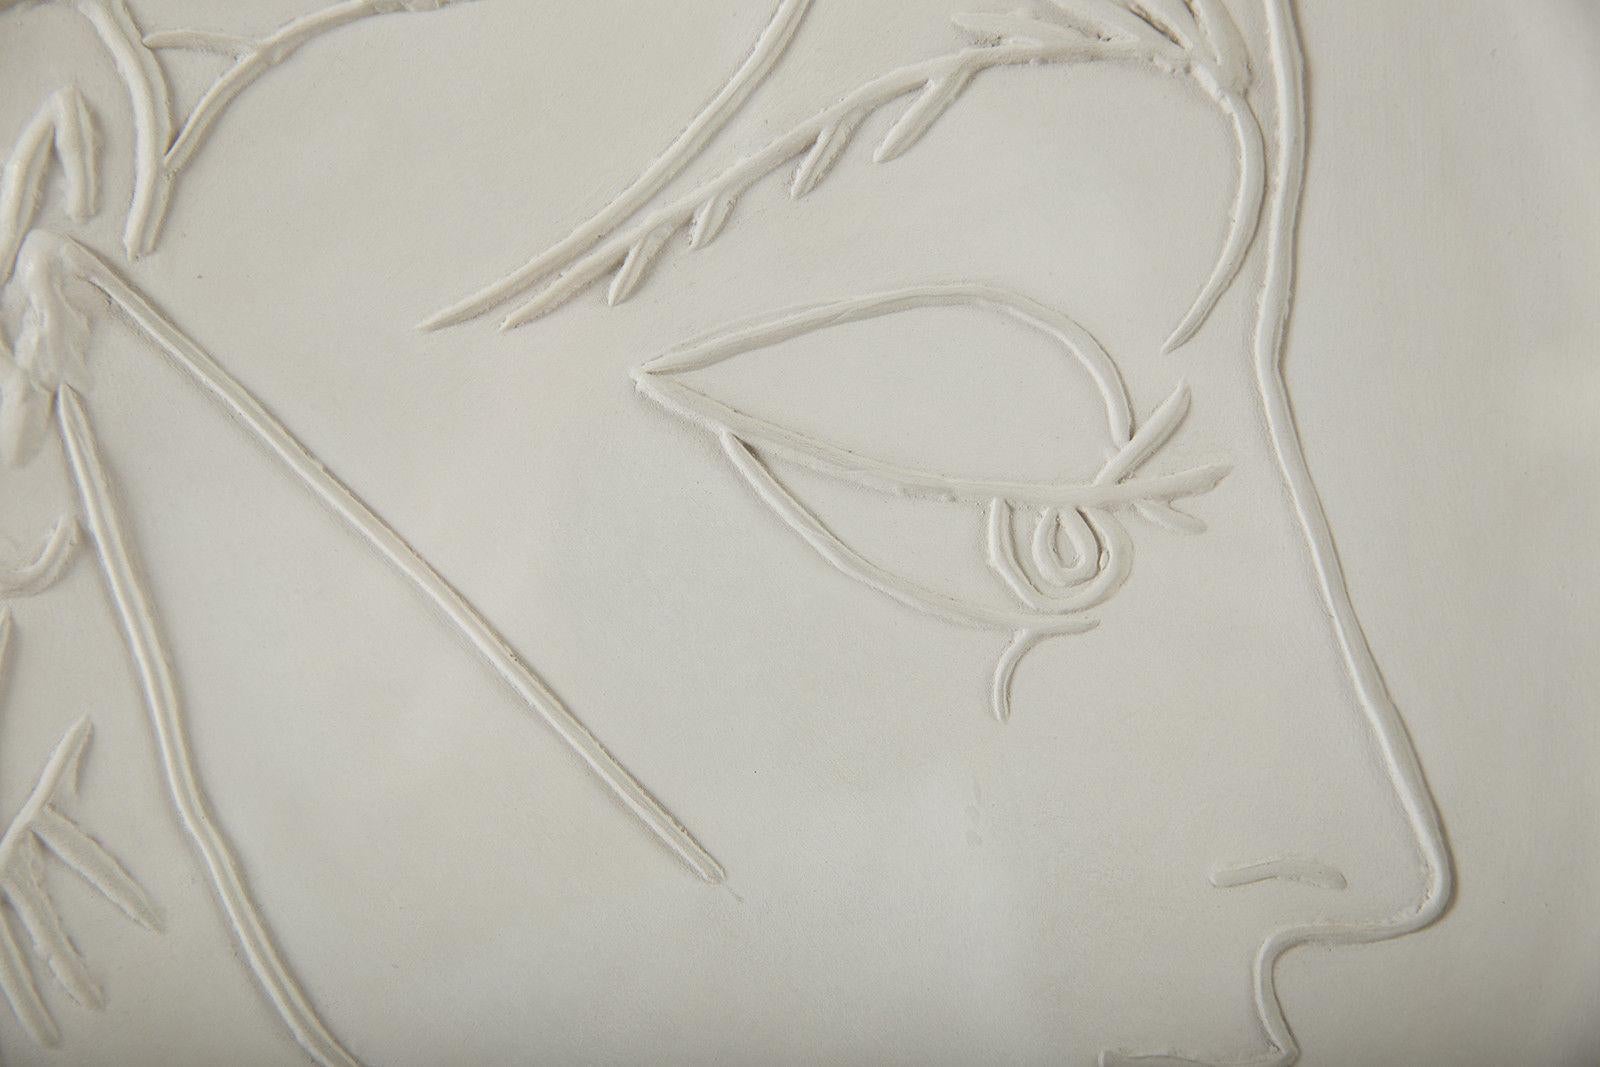 Pablo Picasso - Profil de Jacqueline White Ceramic plate 
15 ½ x 15 1/2